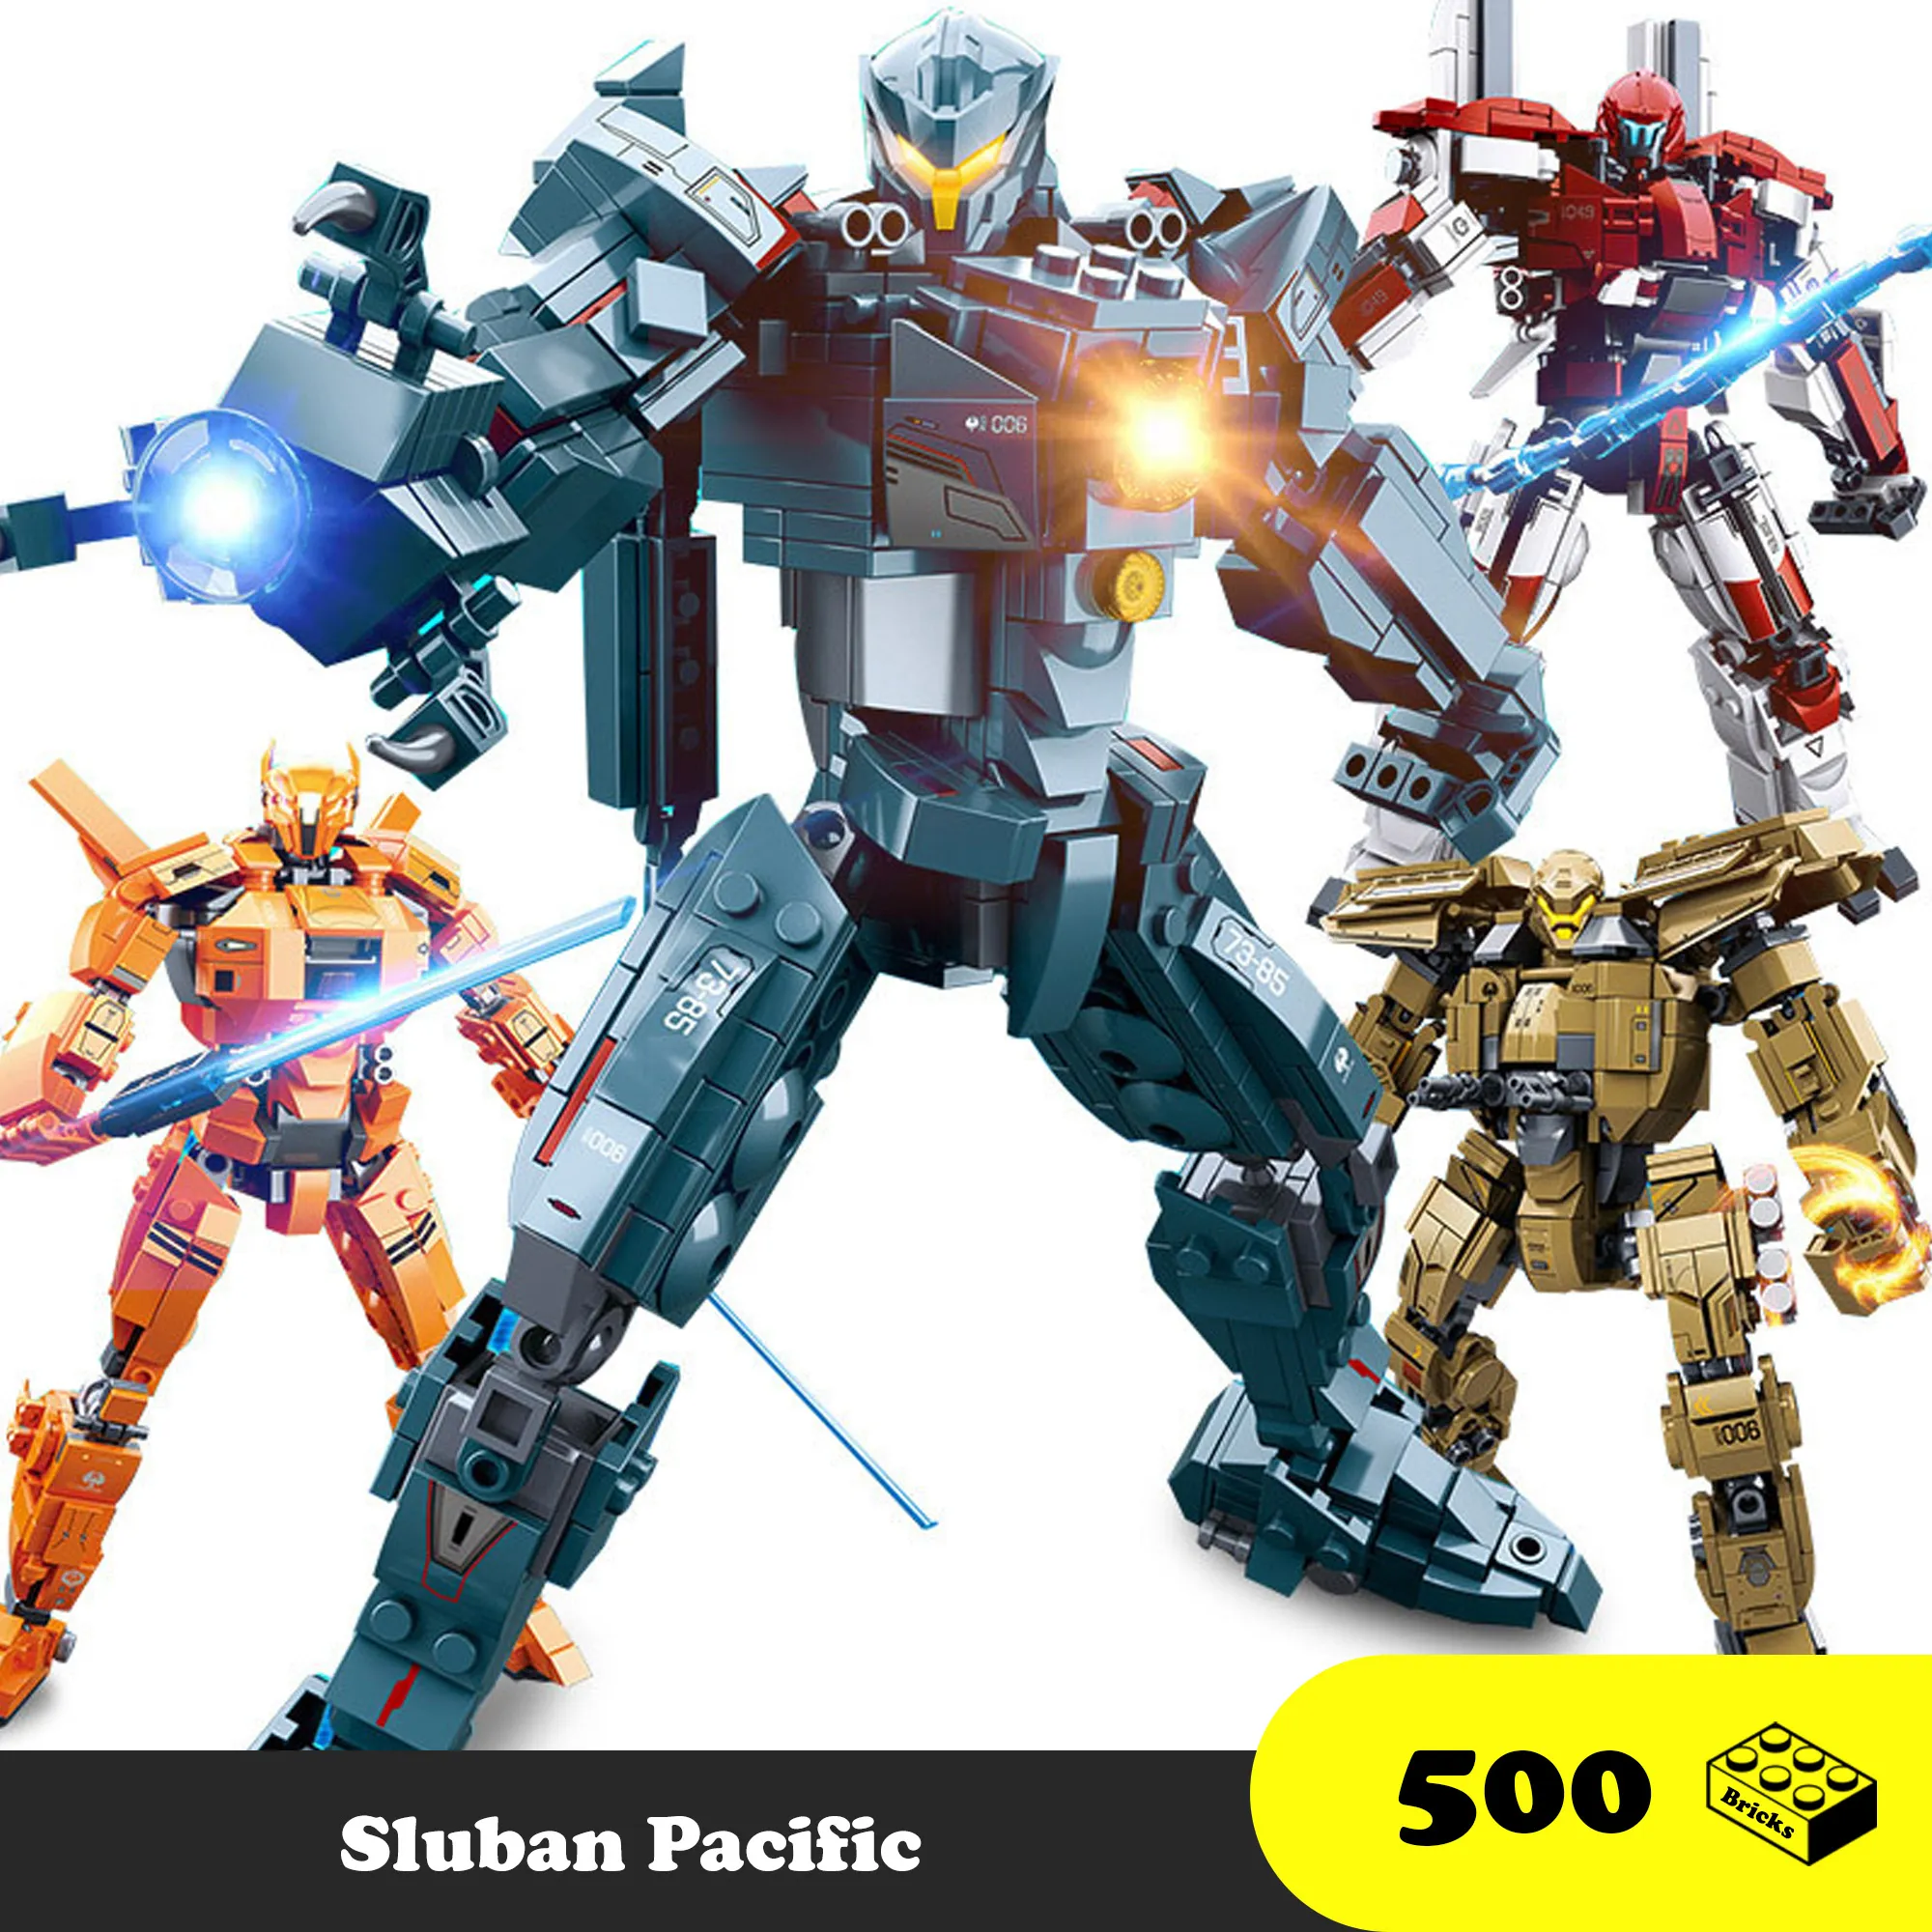 Đồ chơi Lego  Robot Mech Pacific Rim huyền thoại bảo vệ Trái Đất - Sluban Toys Jaeger Robot